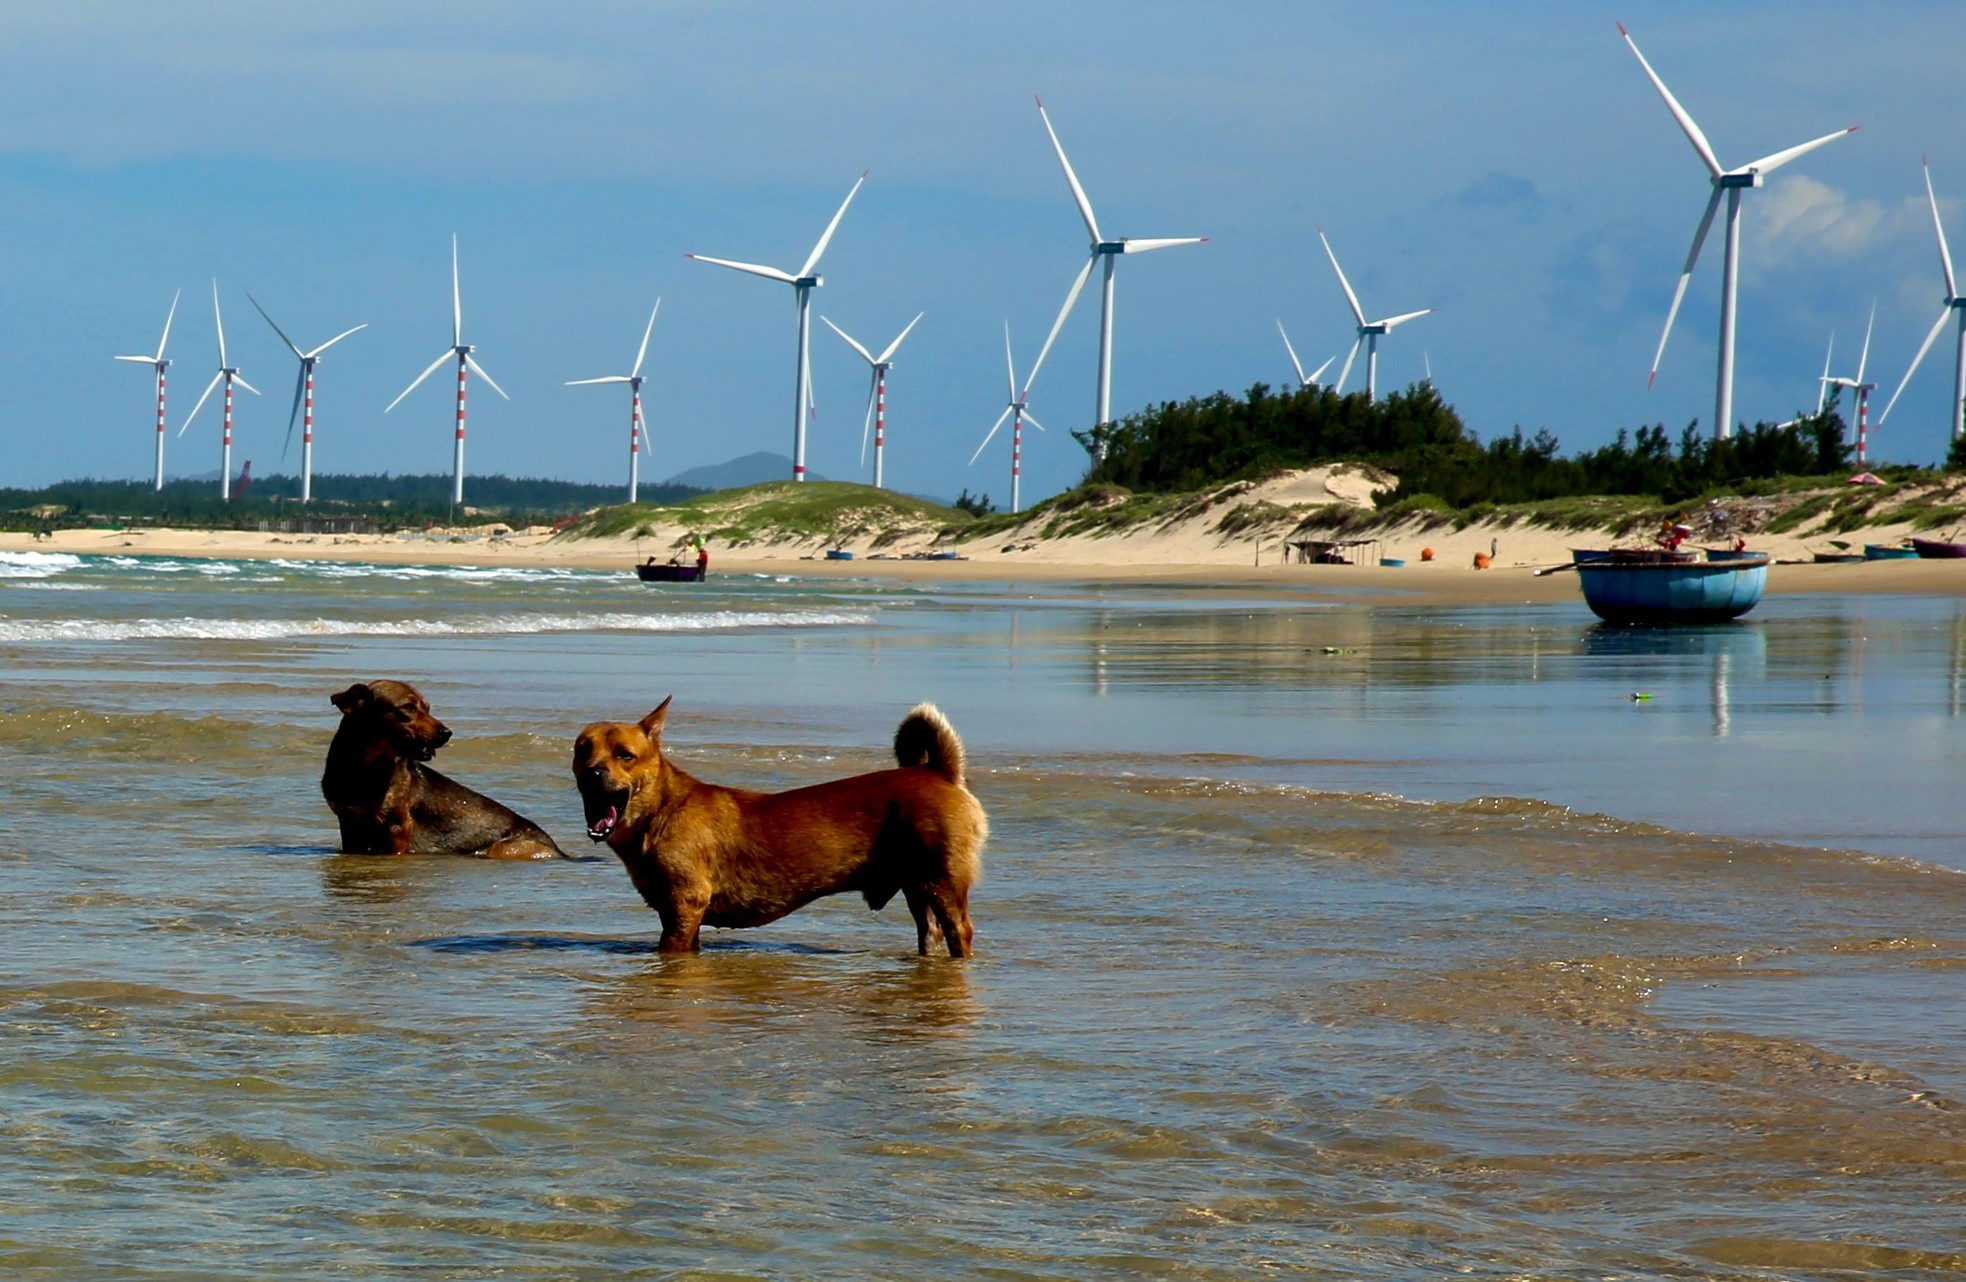 Đẹp mê hoặc của cánh đồng điện gió trên biển Quy Nhơn-8